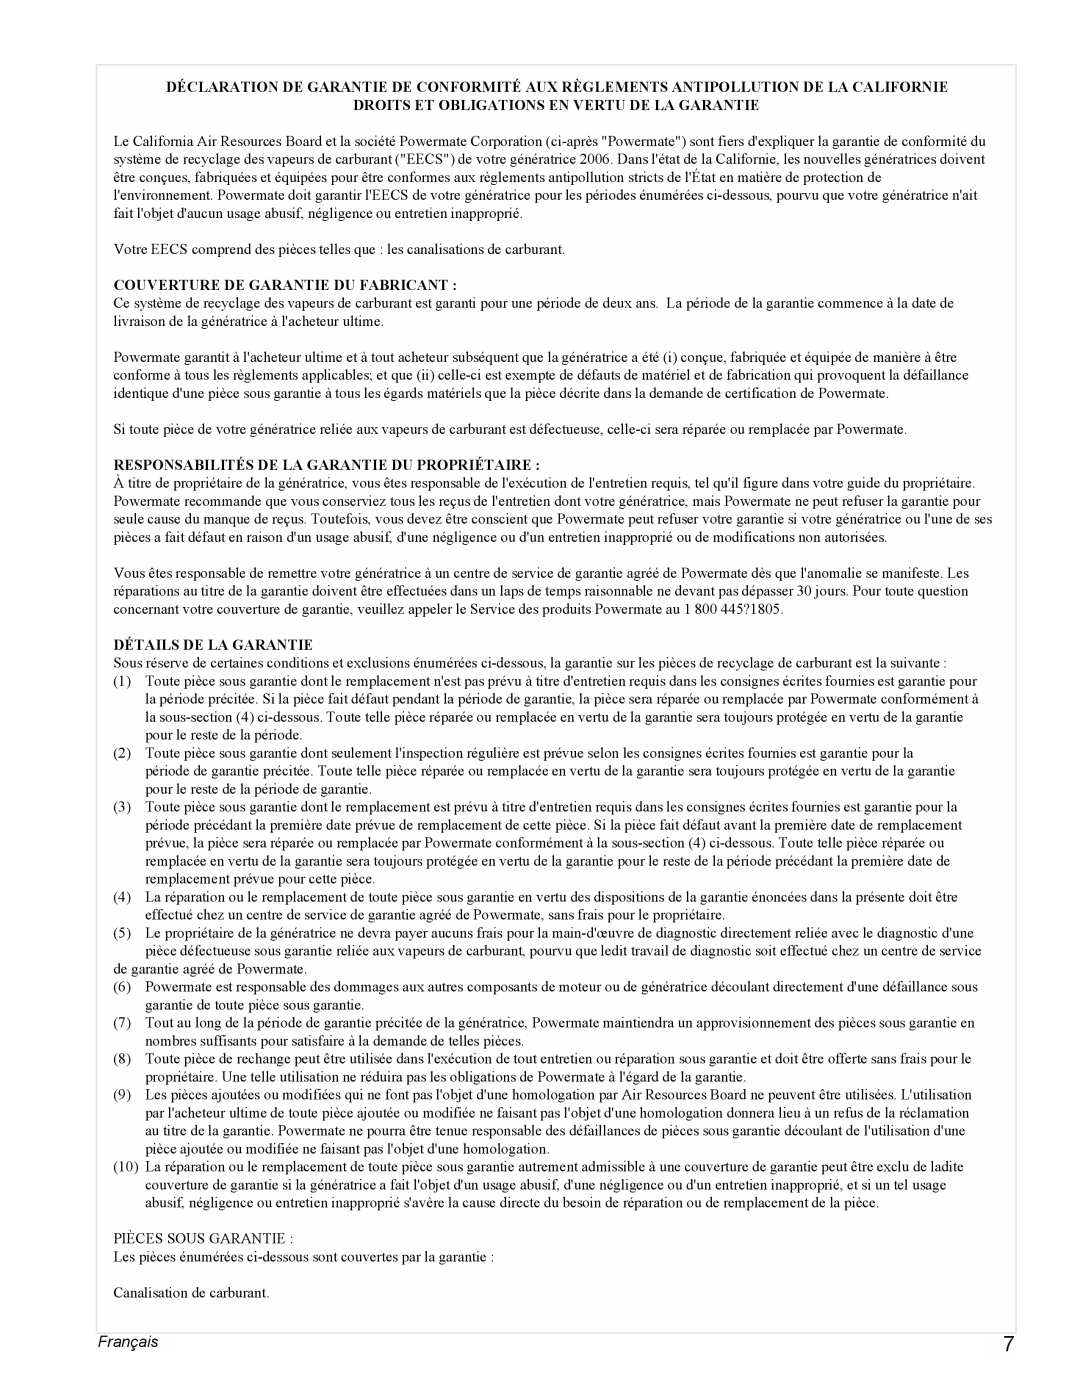 Powermate PMC435250 manual Français, Droits Et Obligations En Vertu De La Garantie, Couverture De Garantie Du Fabricant 